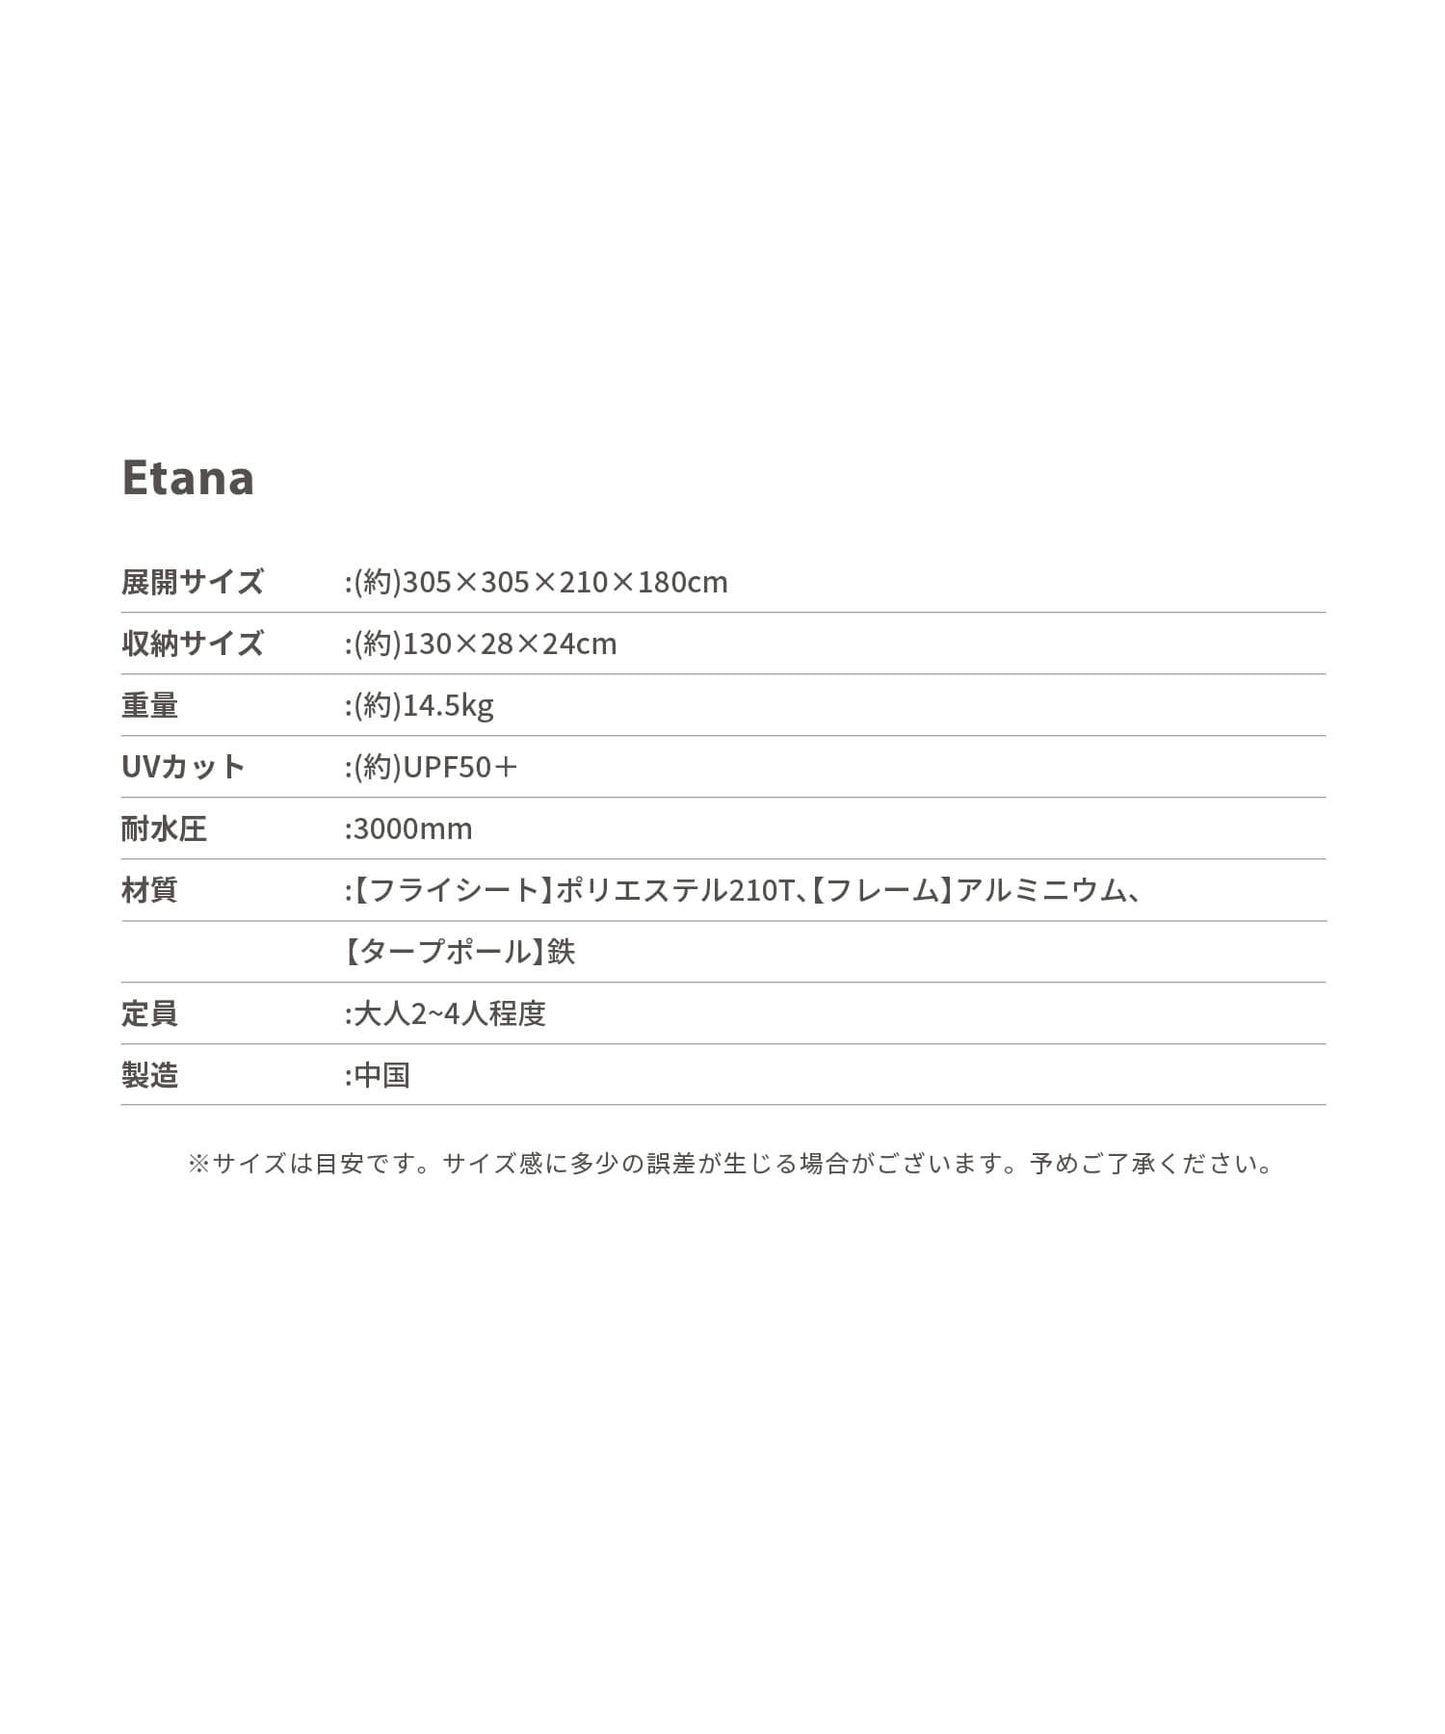 【 Etana 】 カーサイドテント エターナ (別売りインナーマットあり)